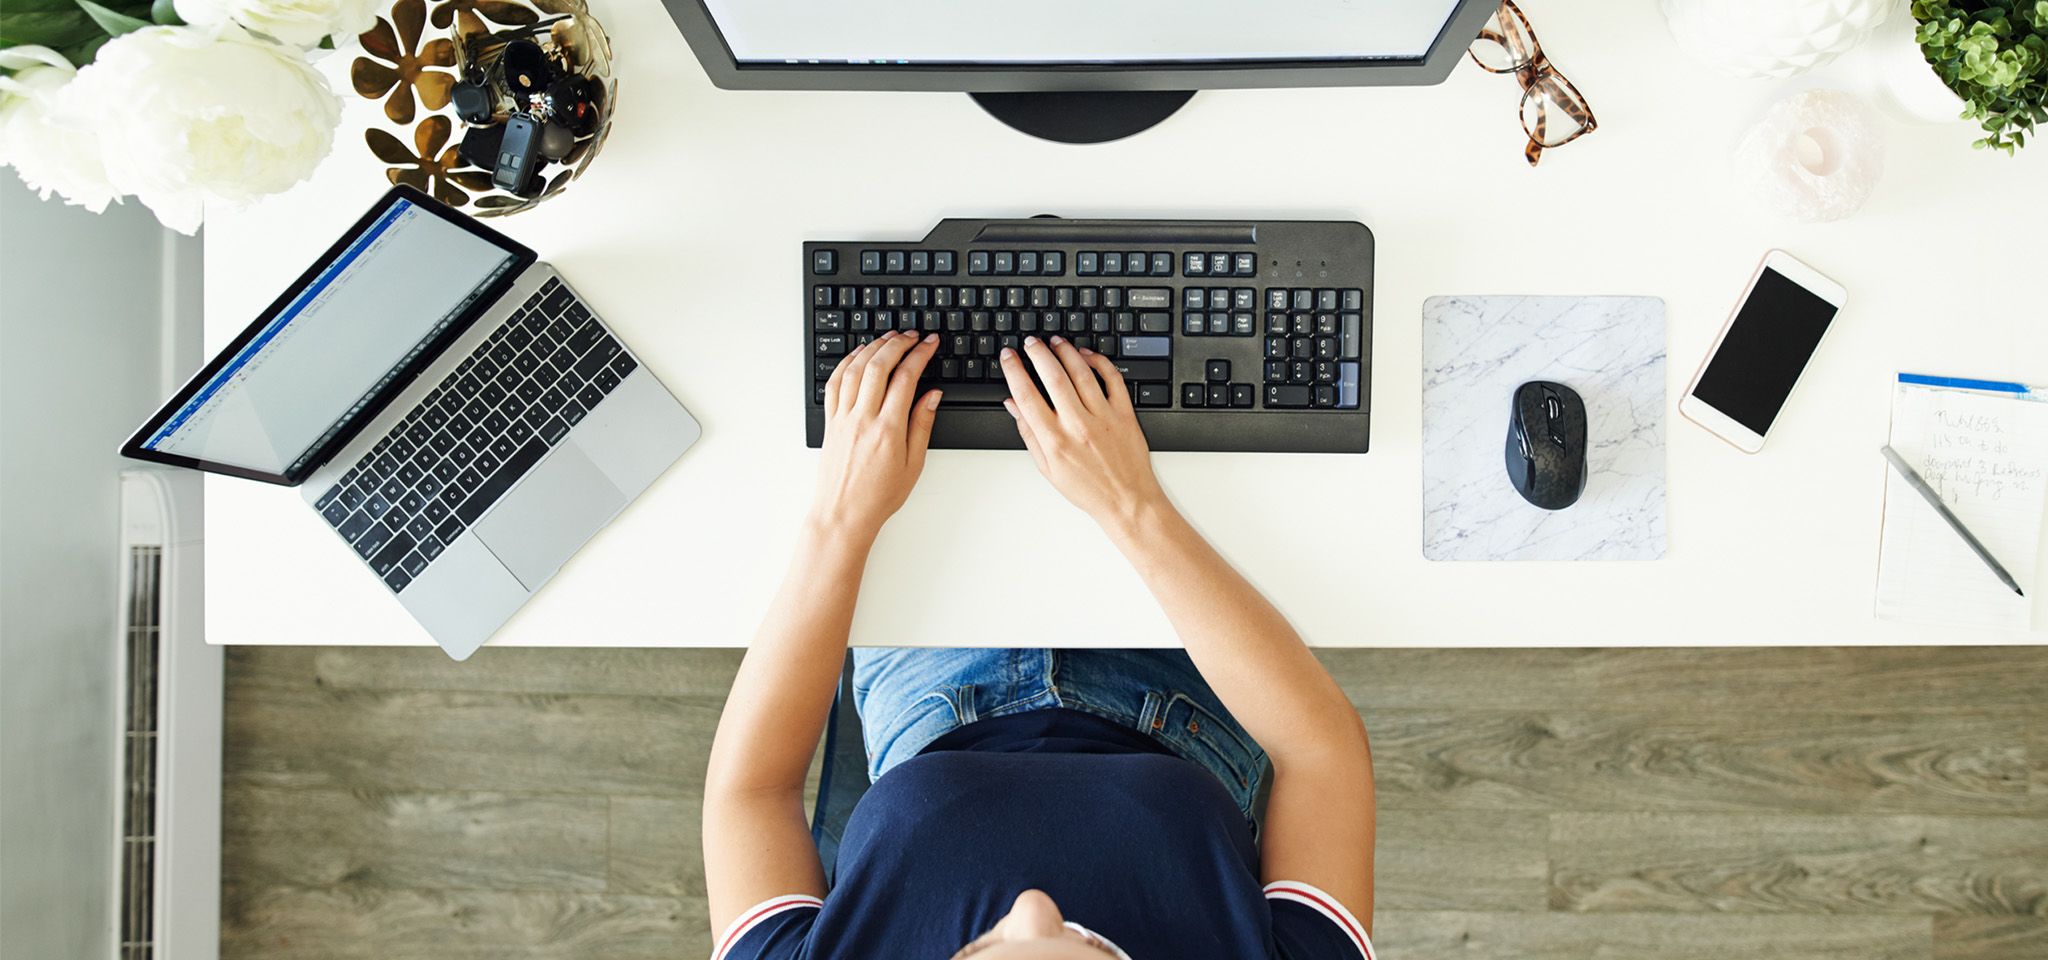 Vue de dessus des mains sur un clavier, avec un moniteur, un ordinateur portable, une souris et un téléphone portable